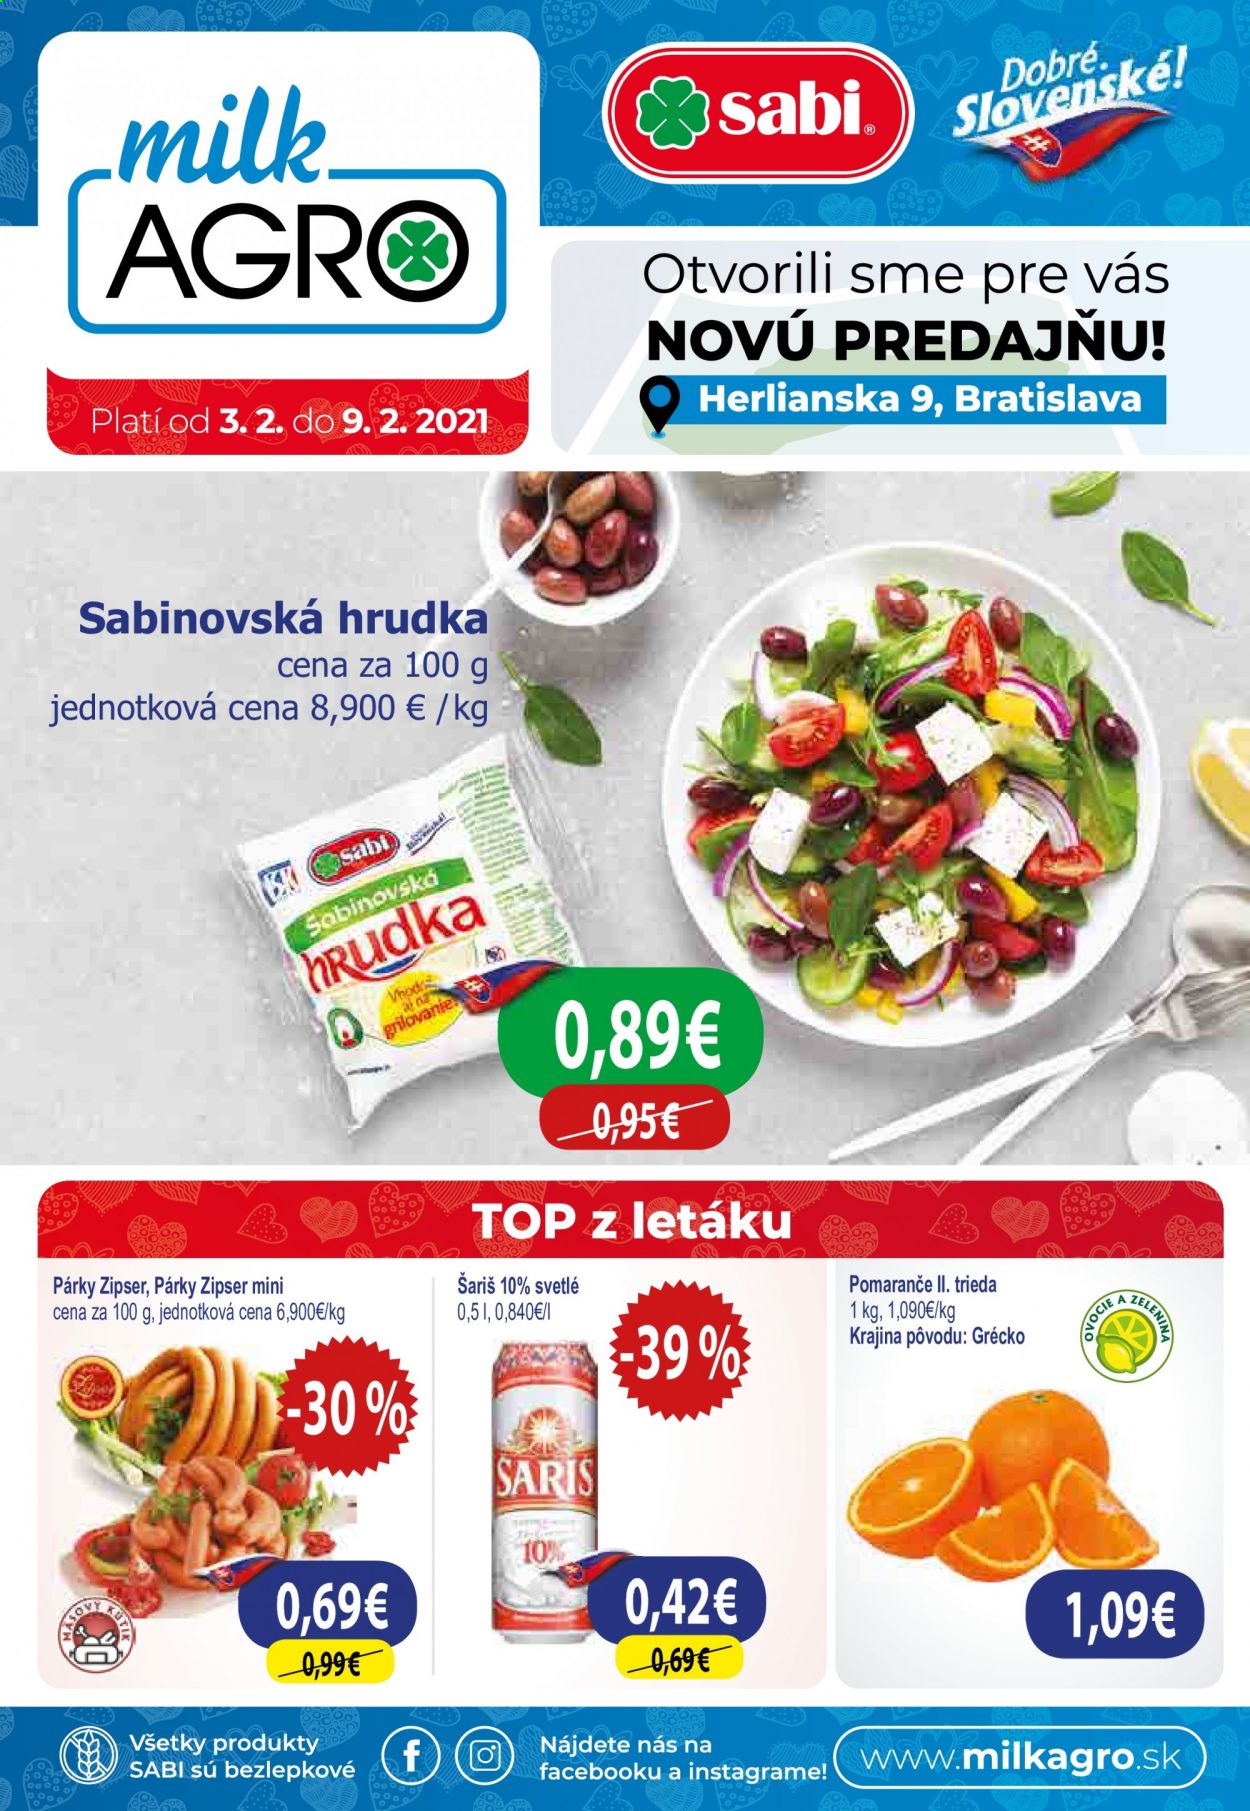 thumbnail - Leták Milk AGRO - 3.2.2021 - 9.2.2021 - Produkty v akcii - pomaranče, Zipser, párky, tvaroh, Sabinovská Hrudka, alkohol, Šariš, svetlé pivo, pivo. Strana 1.